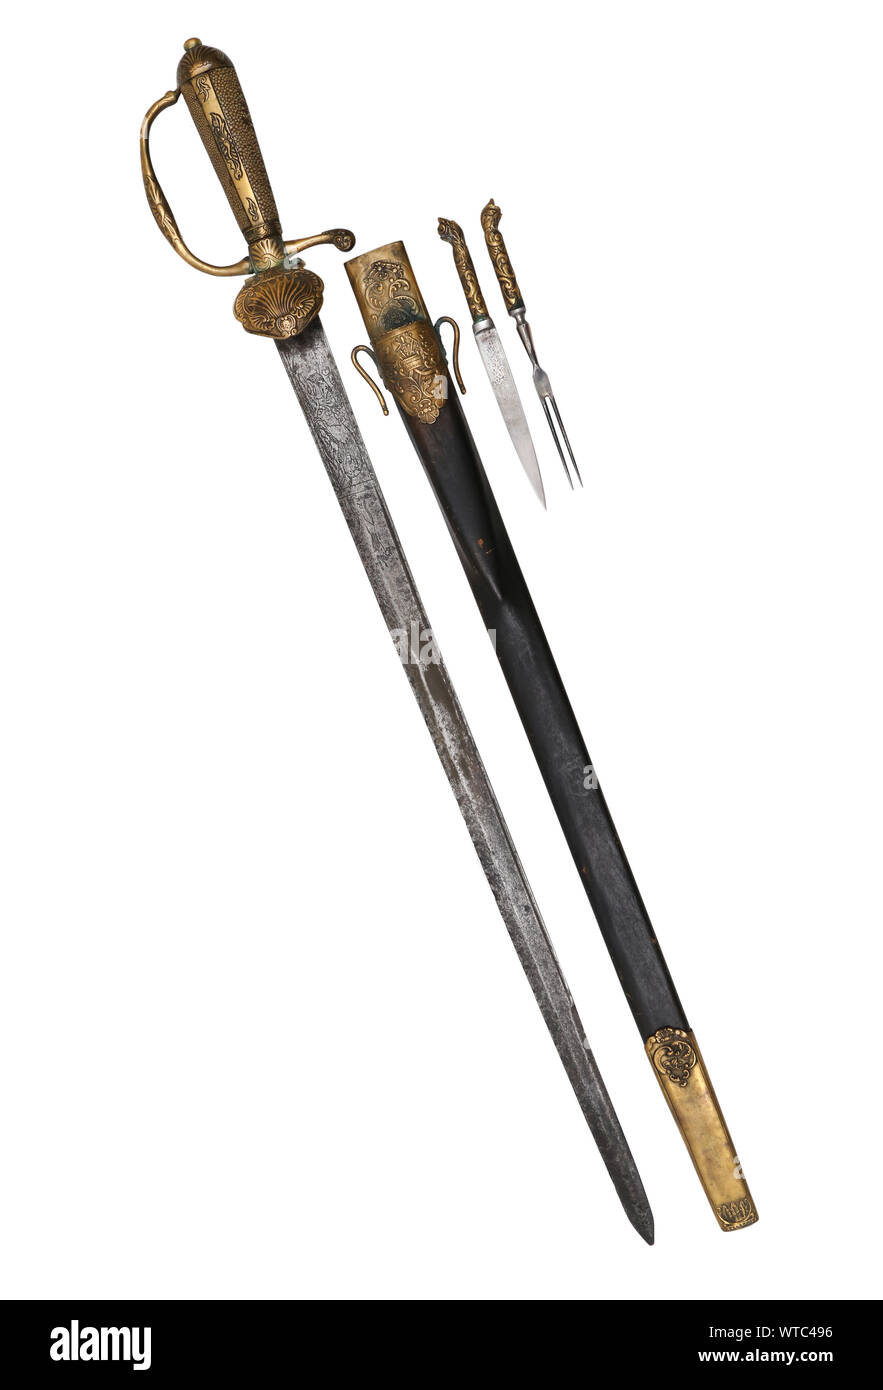 Dague de chasse allemand du xviiie siècle (hirschfanger) à partir de la région des Alpes avec seul tranchant pointu blad. Banque D'Images